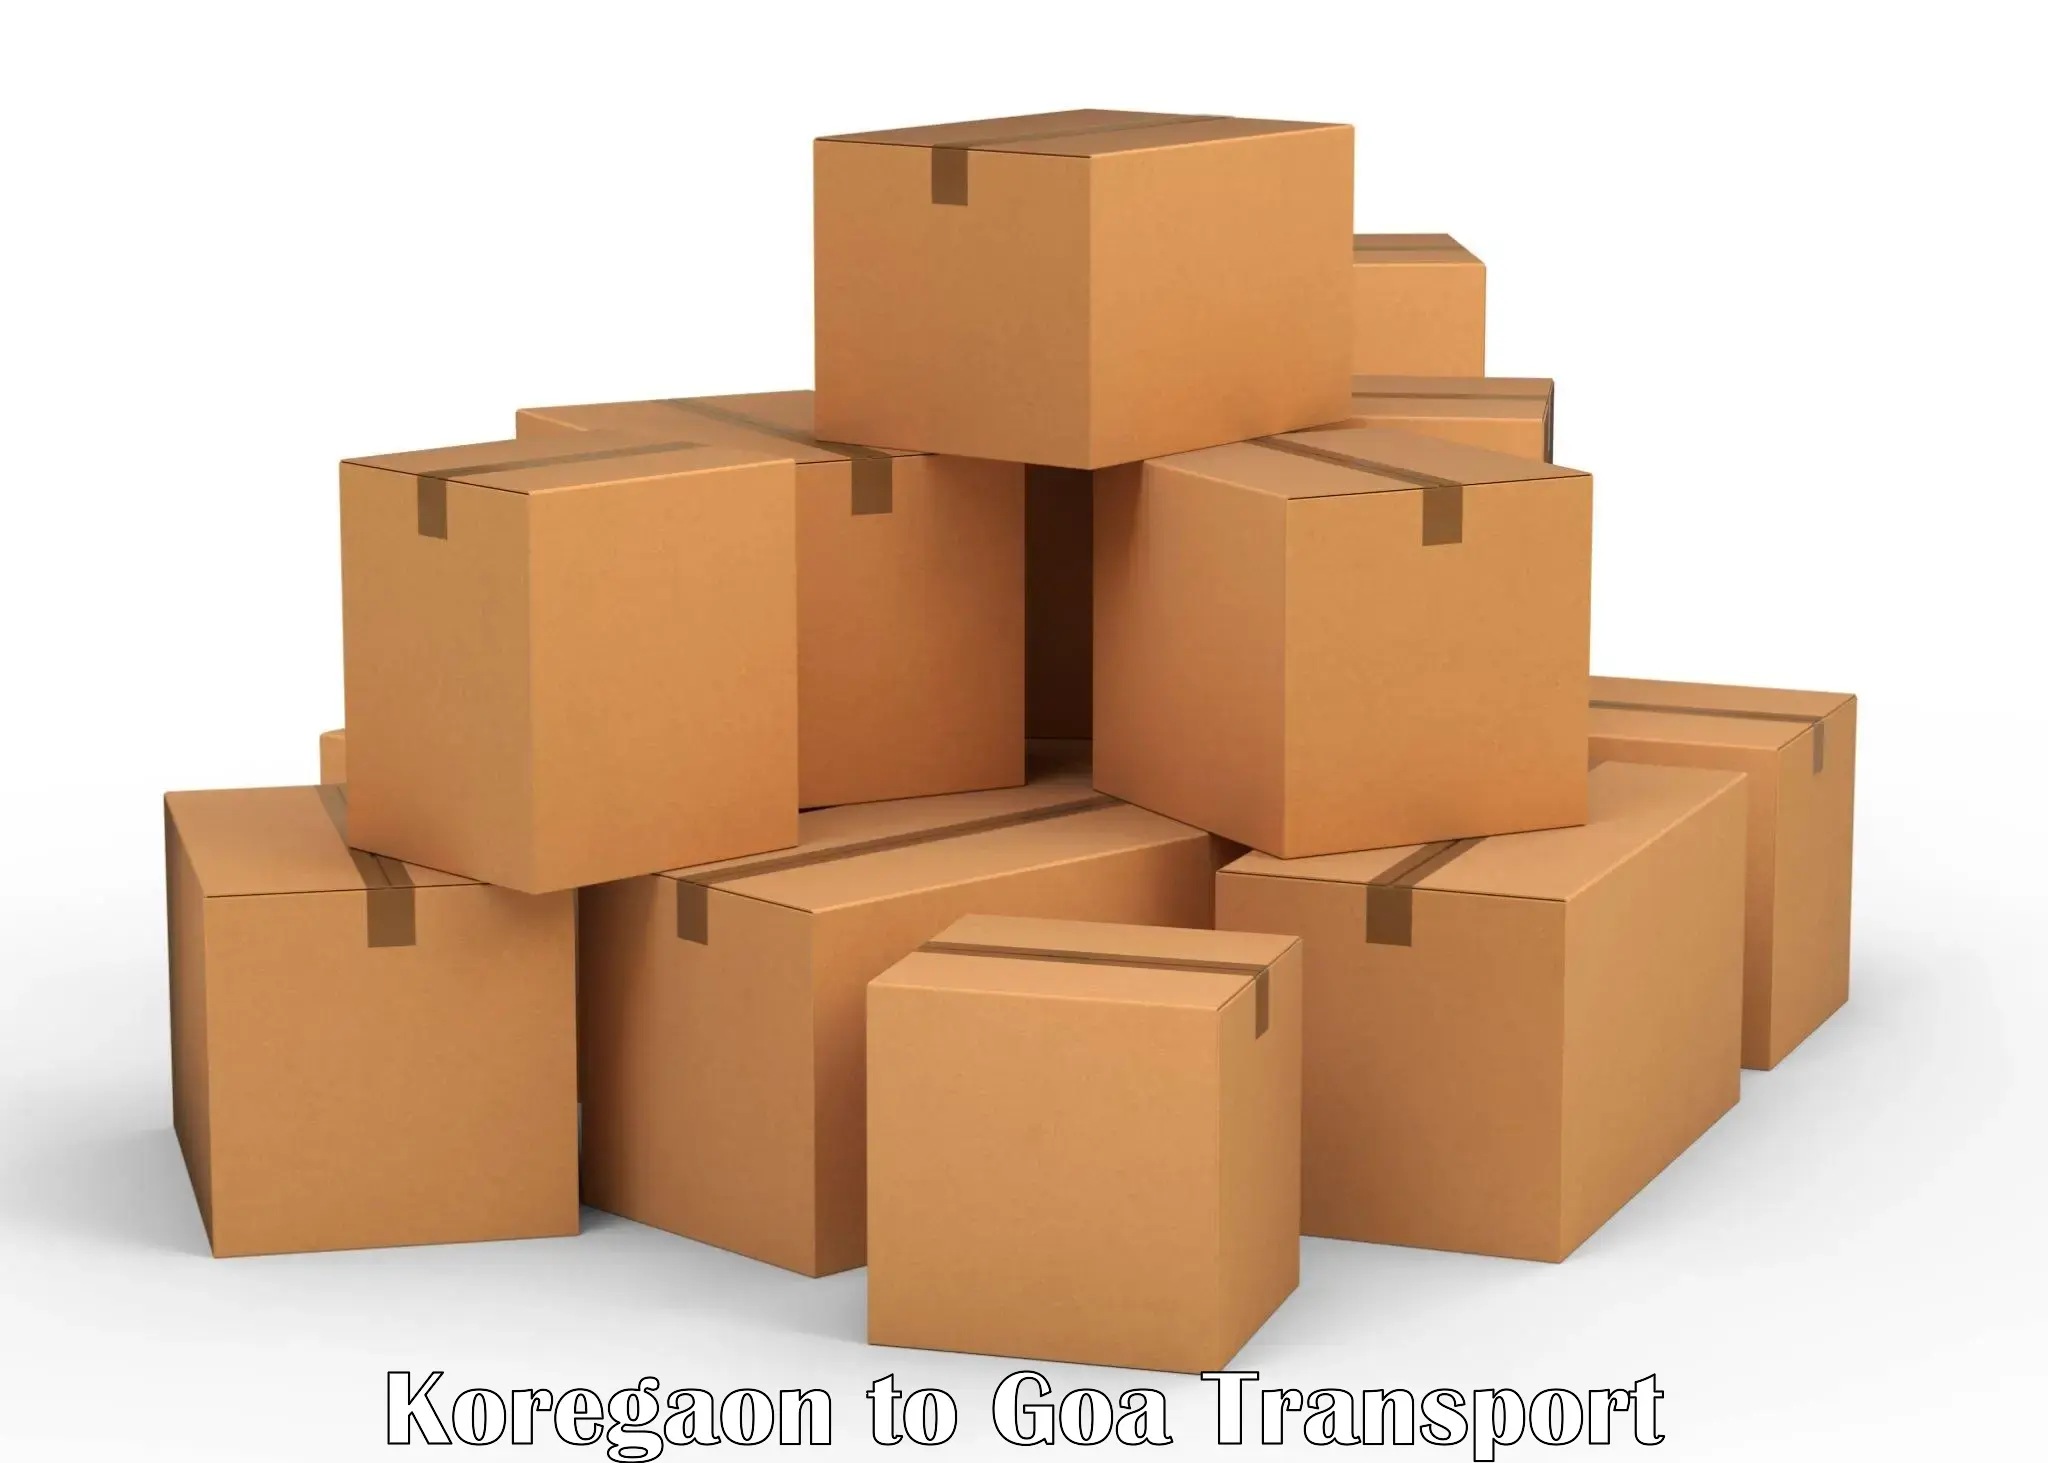 Two wheeler parcel service Koregaon to Sanvordem